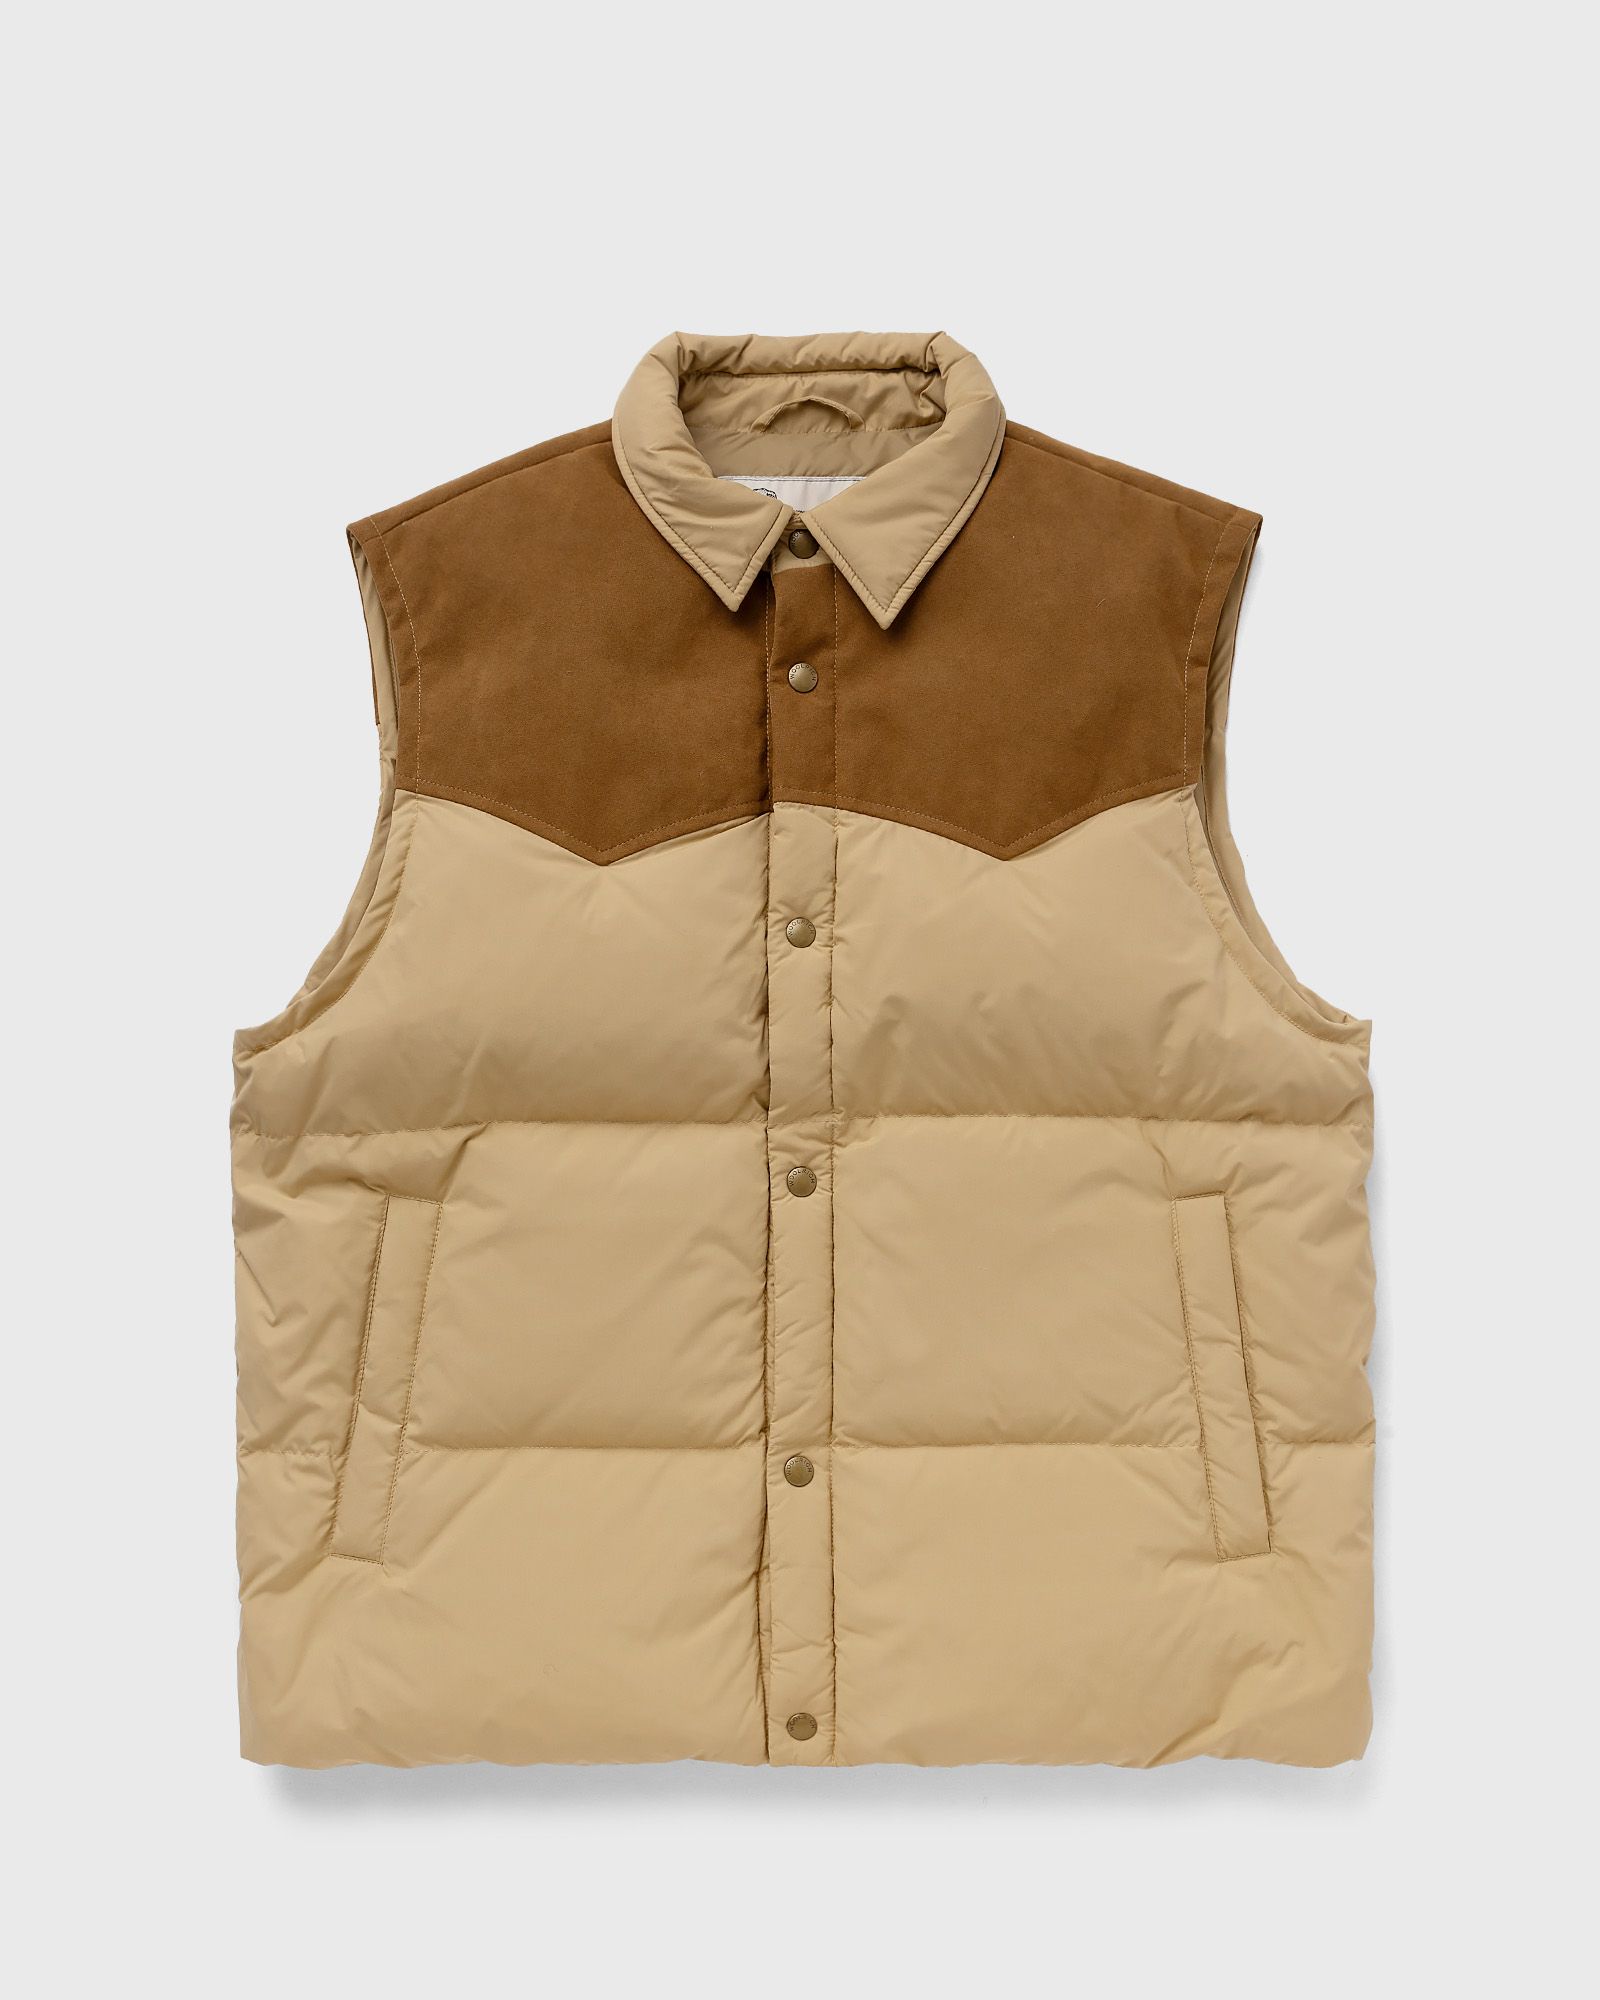 One of these Days - x woolrich puffer vest men vests beige in größe:3xl